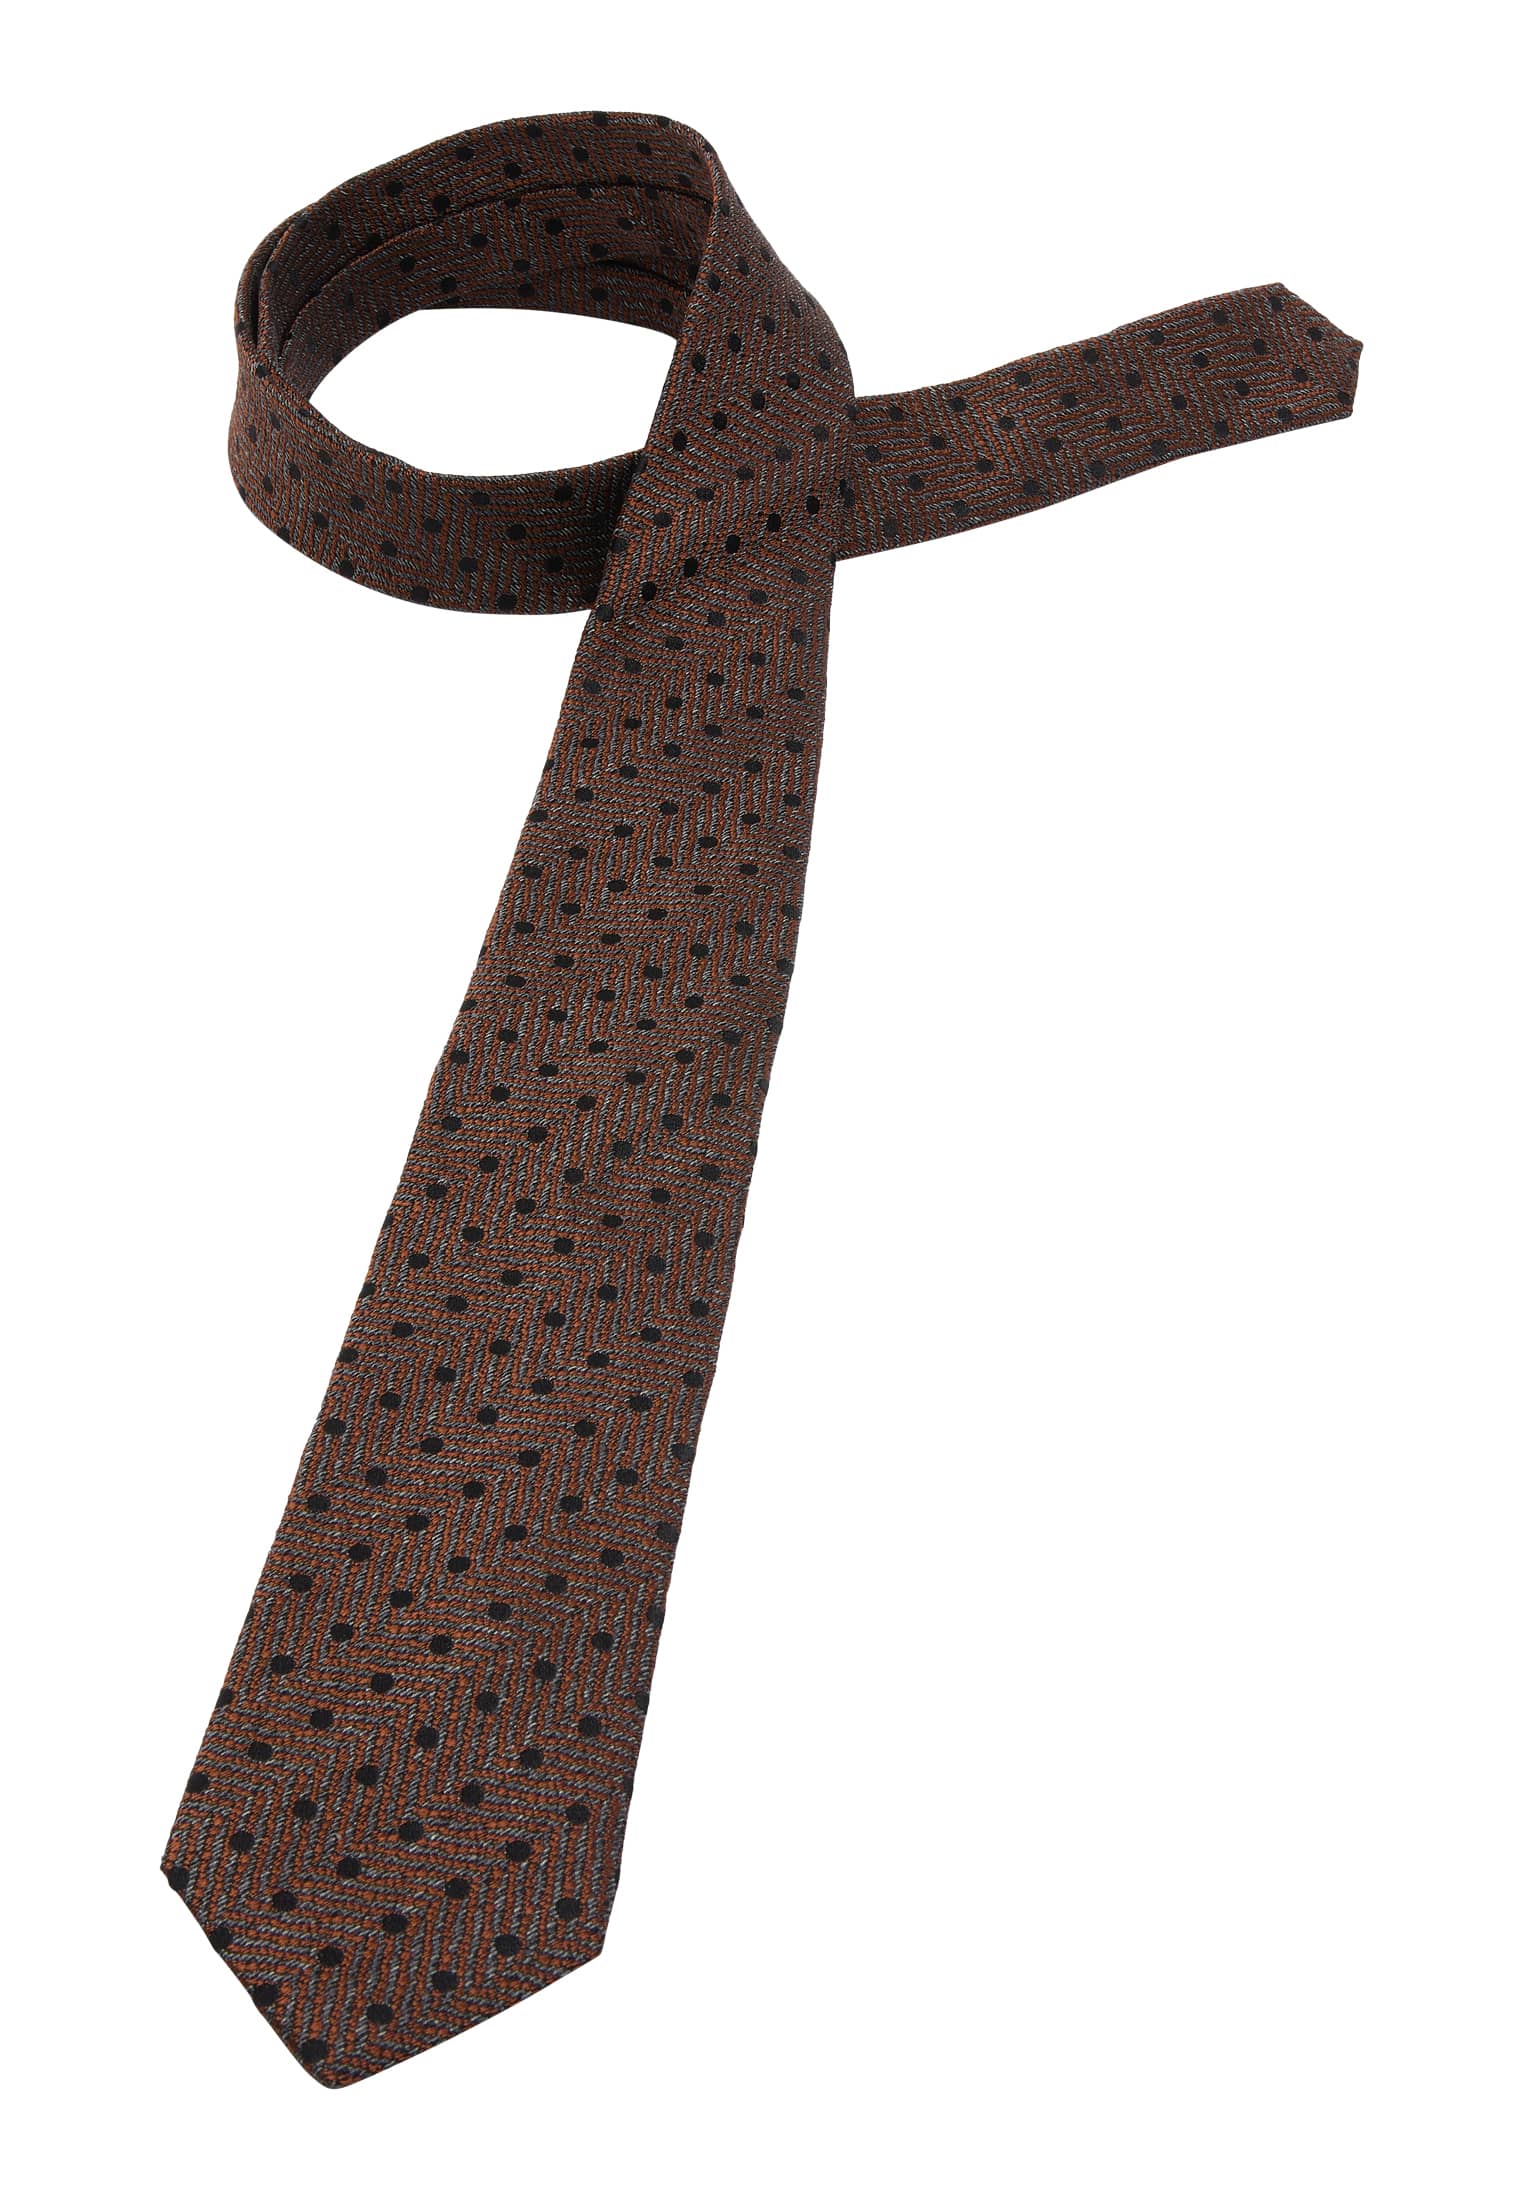 Krawatte in braun | 142 | braun strukturiert | 1AC01933-02-91-142